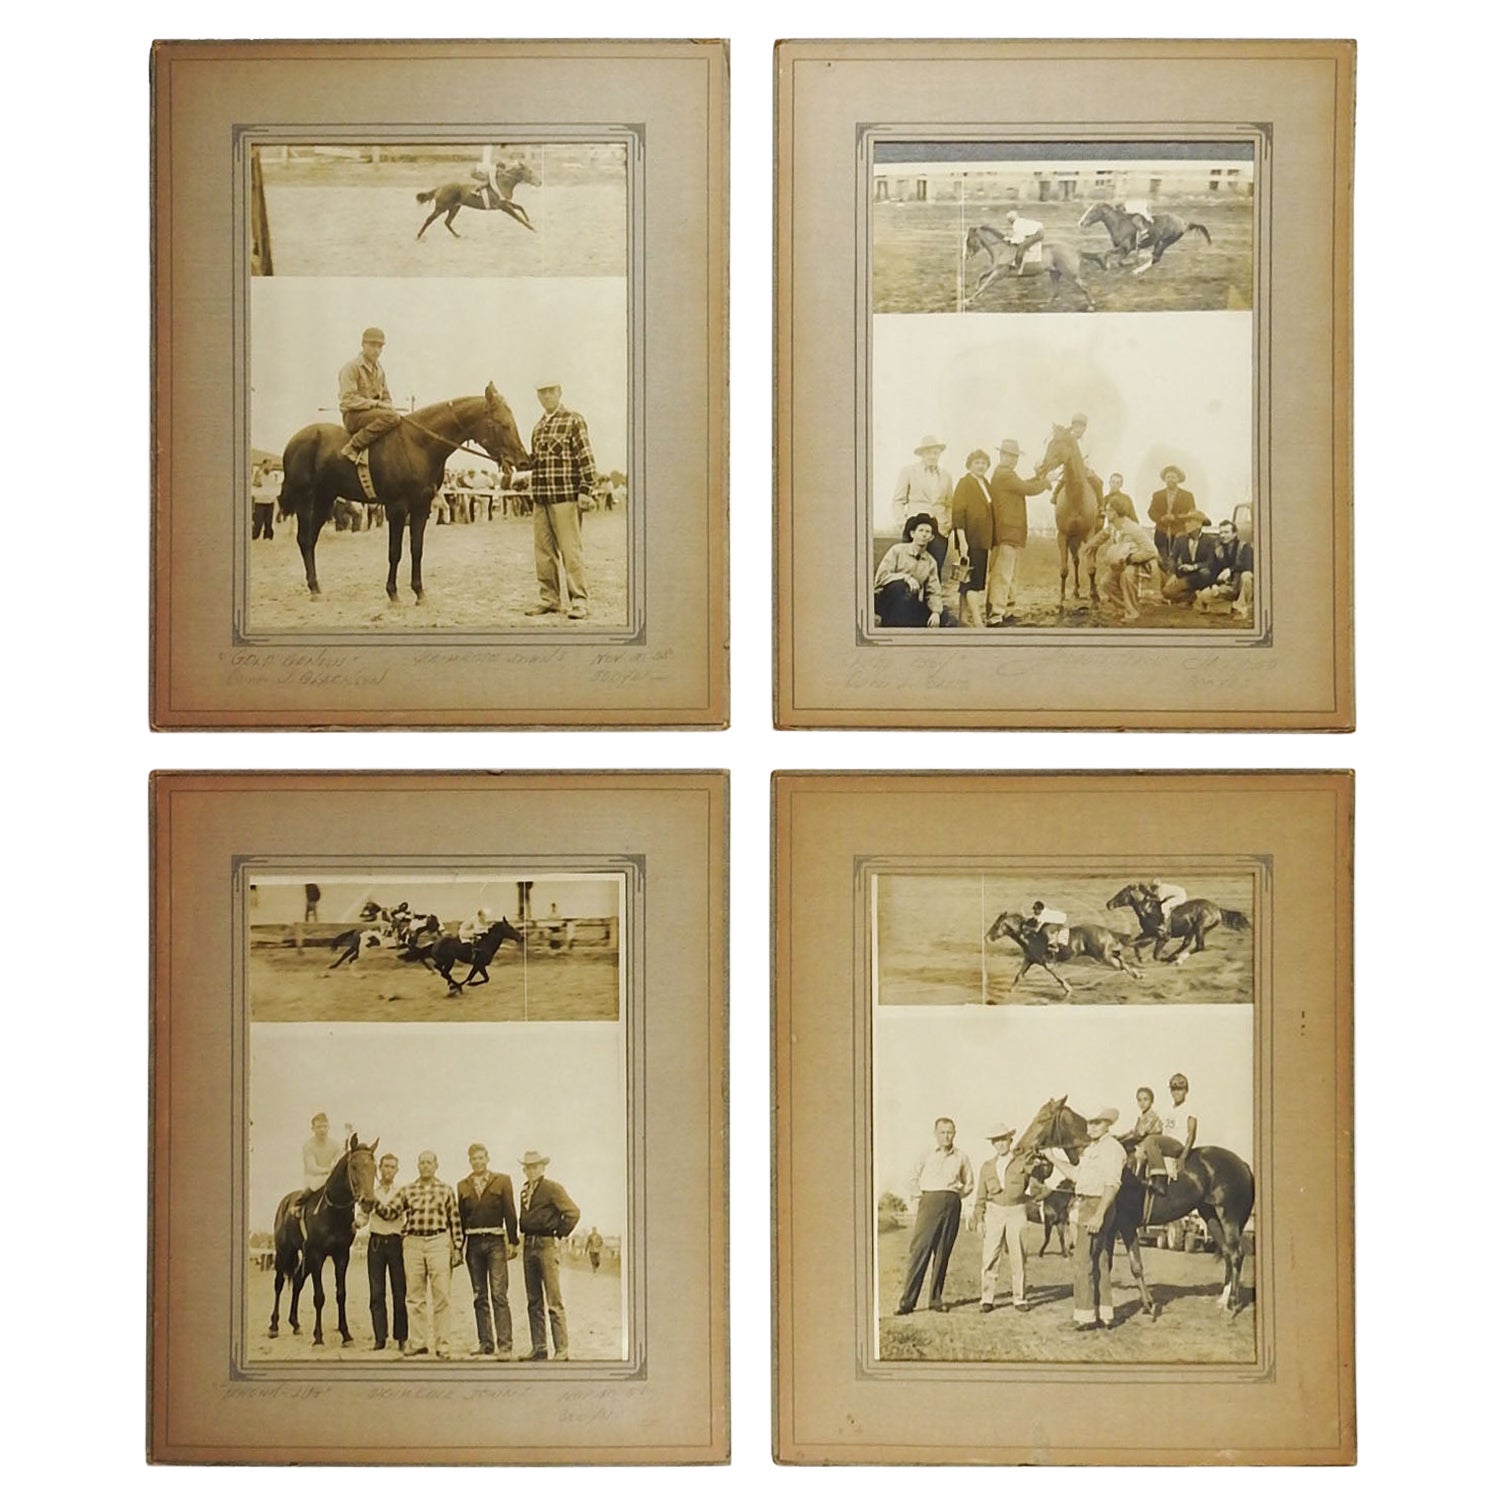 Pferderennen-Fotografien aus den 1950er Jahren – 4er-Set